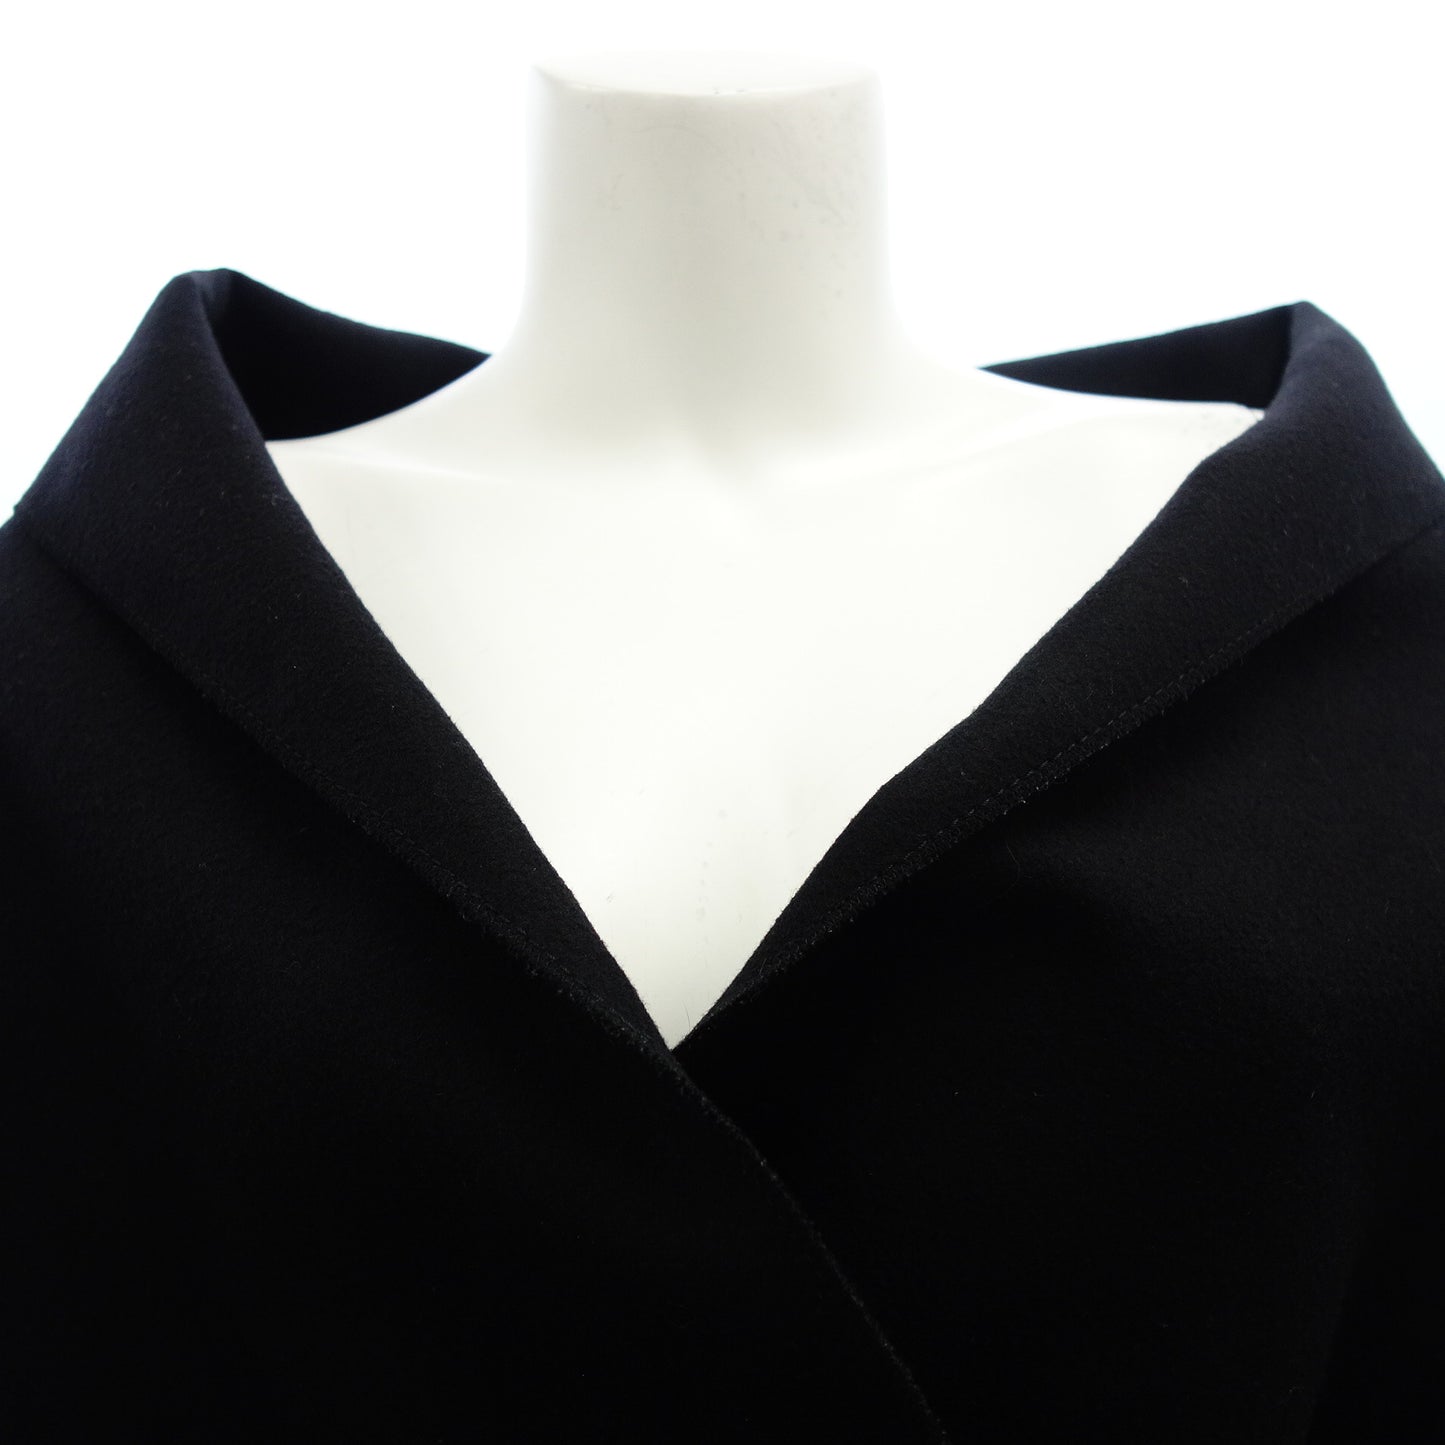 普拉达外套夹克尺寸 42 黑色女士 PRADA [AFA15] [二手货] 